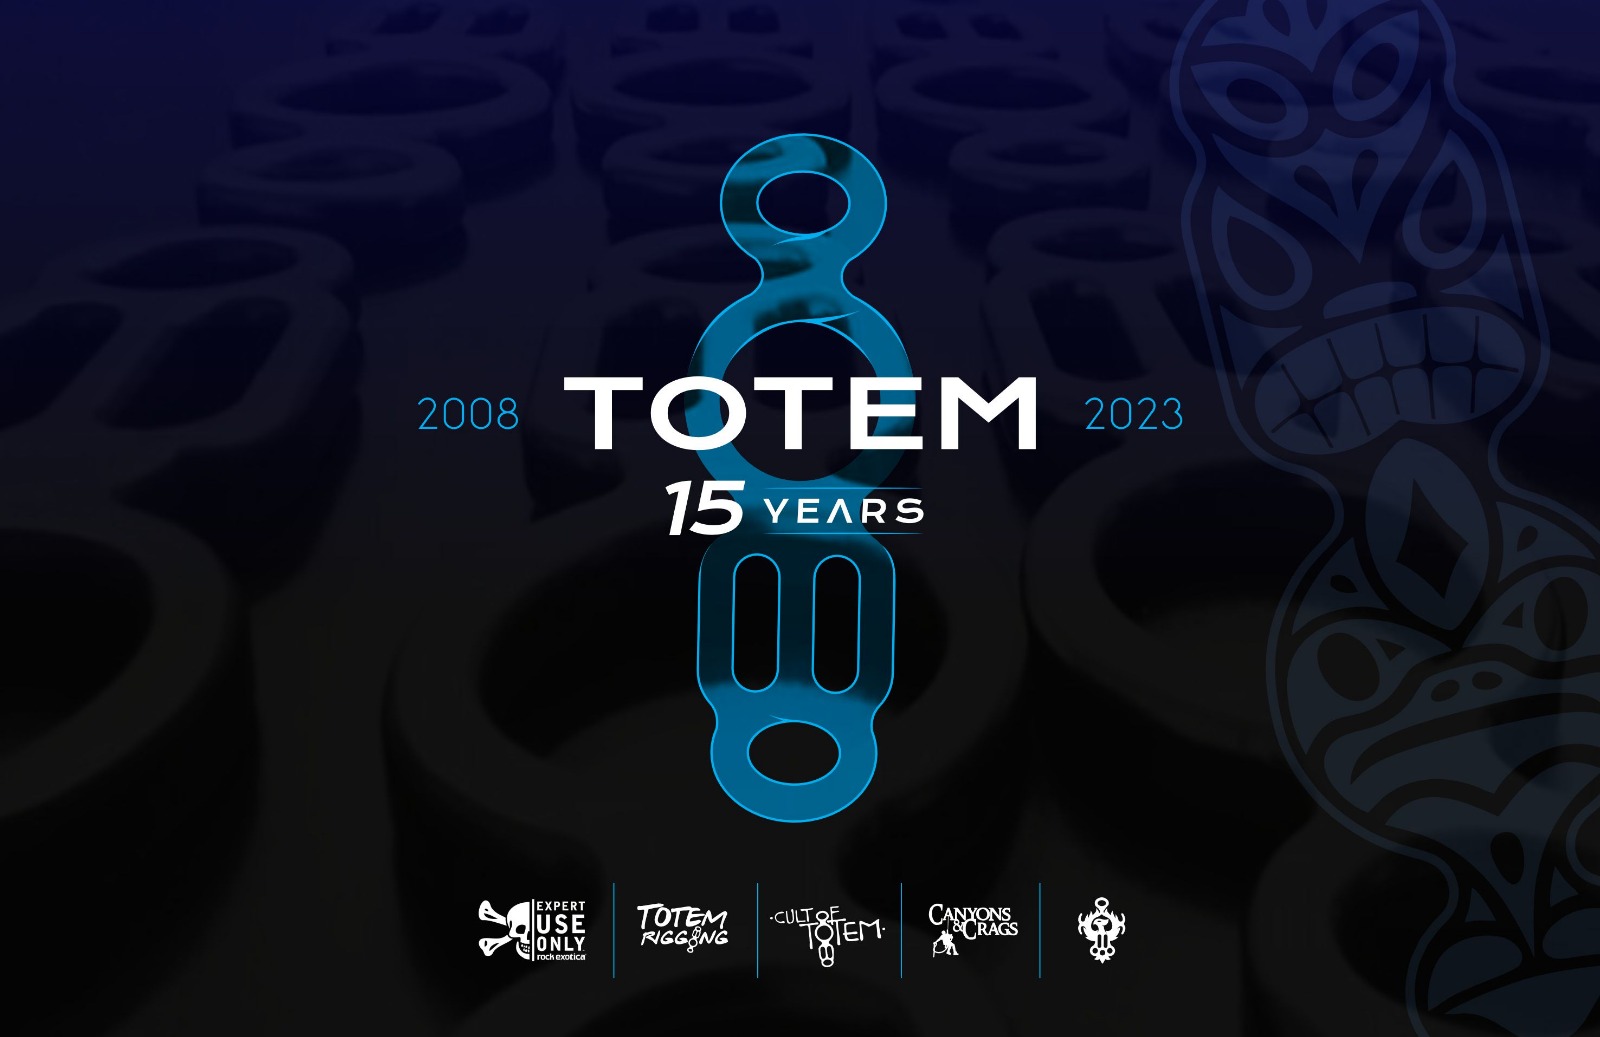 Totem turns 15